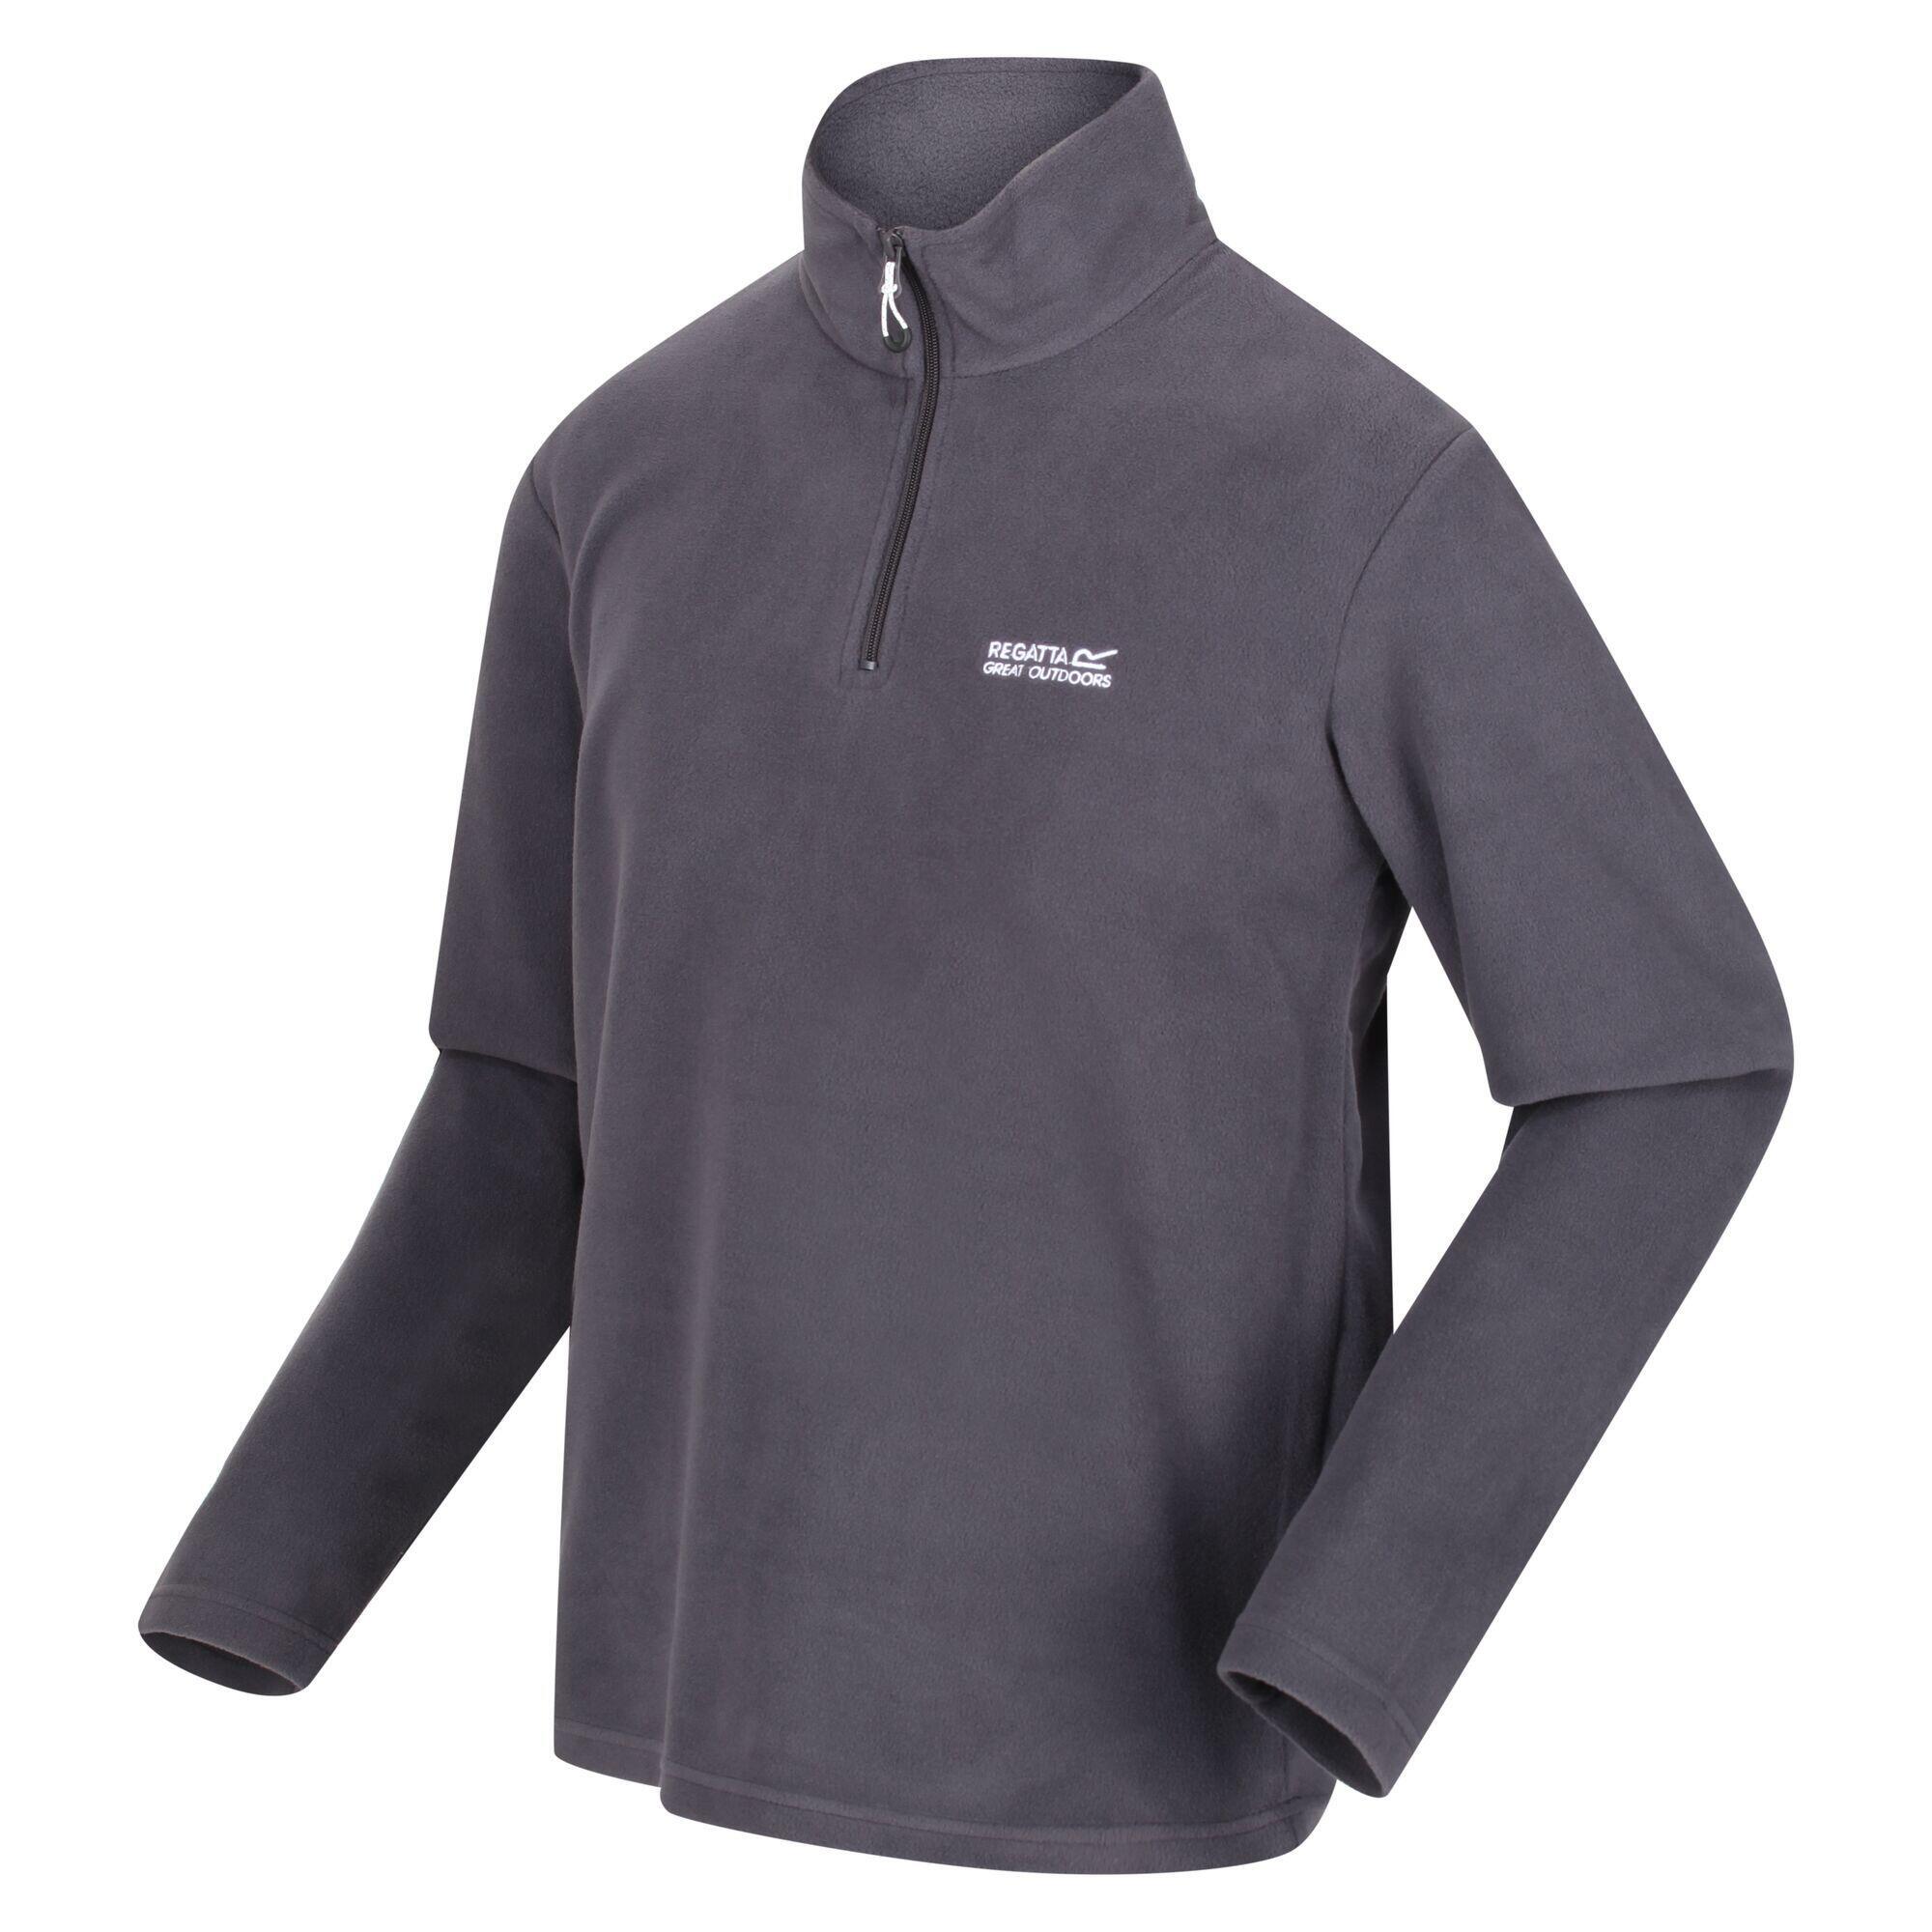 Куртка Regatta Thompson Hiking мужская флисовая, серый куртка флисовая мужская new look men 250 бирюзовая размер xl